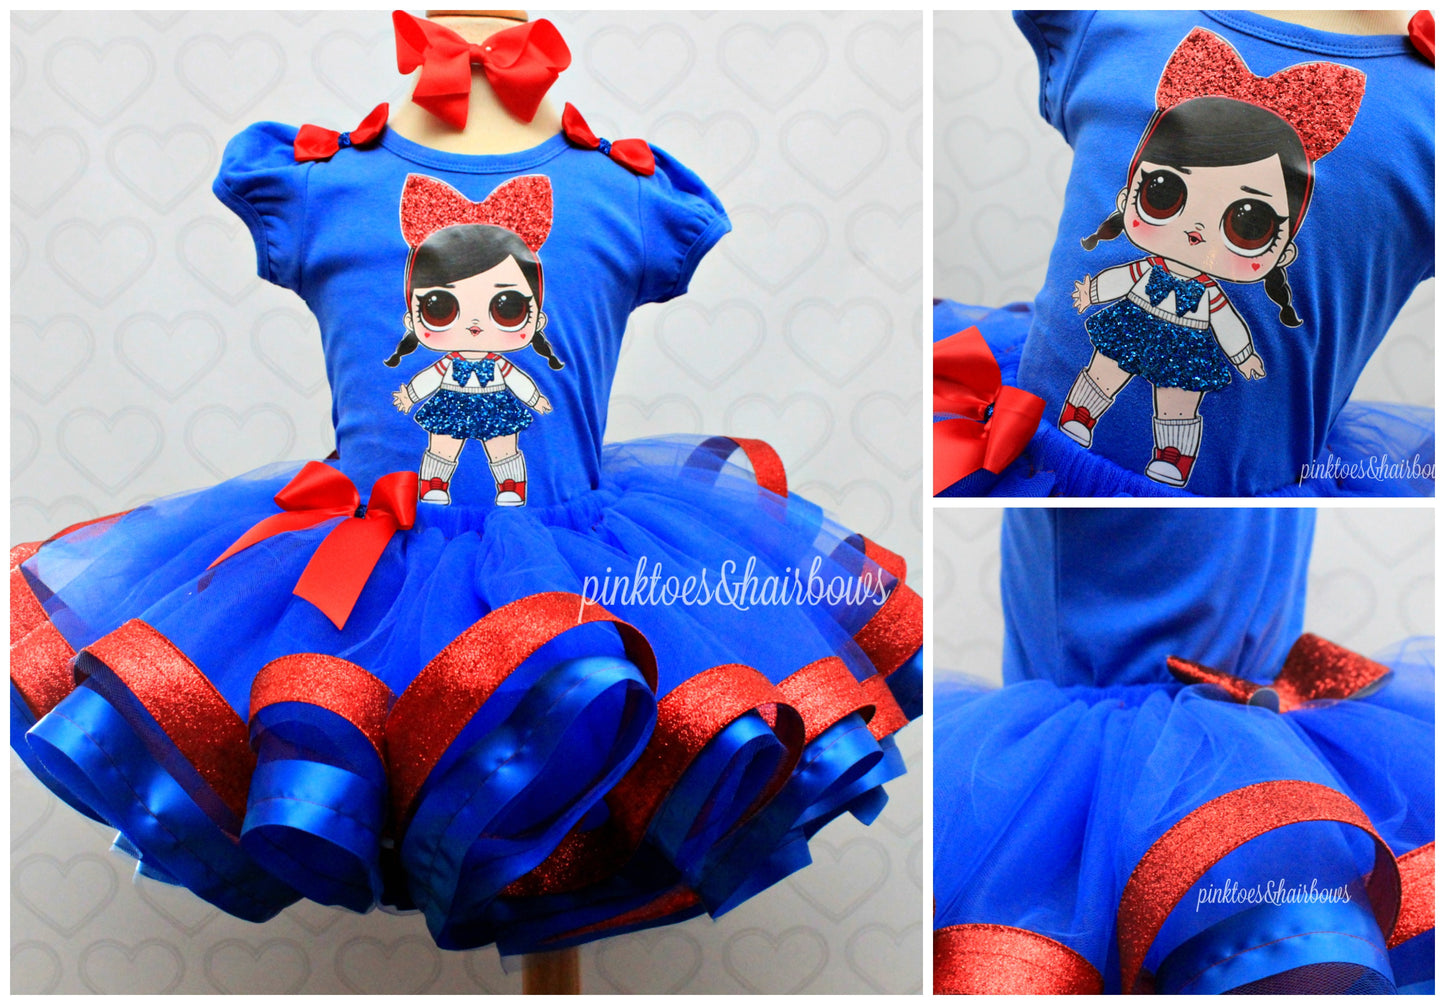 Fanime Lol surprise doll tutu set-lol surprise outfit- lol surprise dress